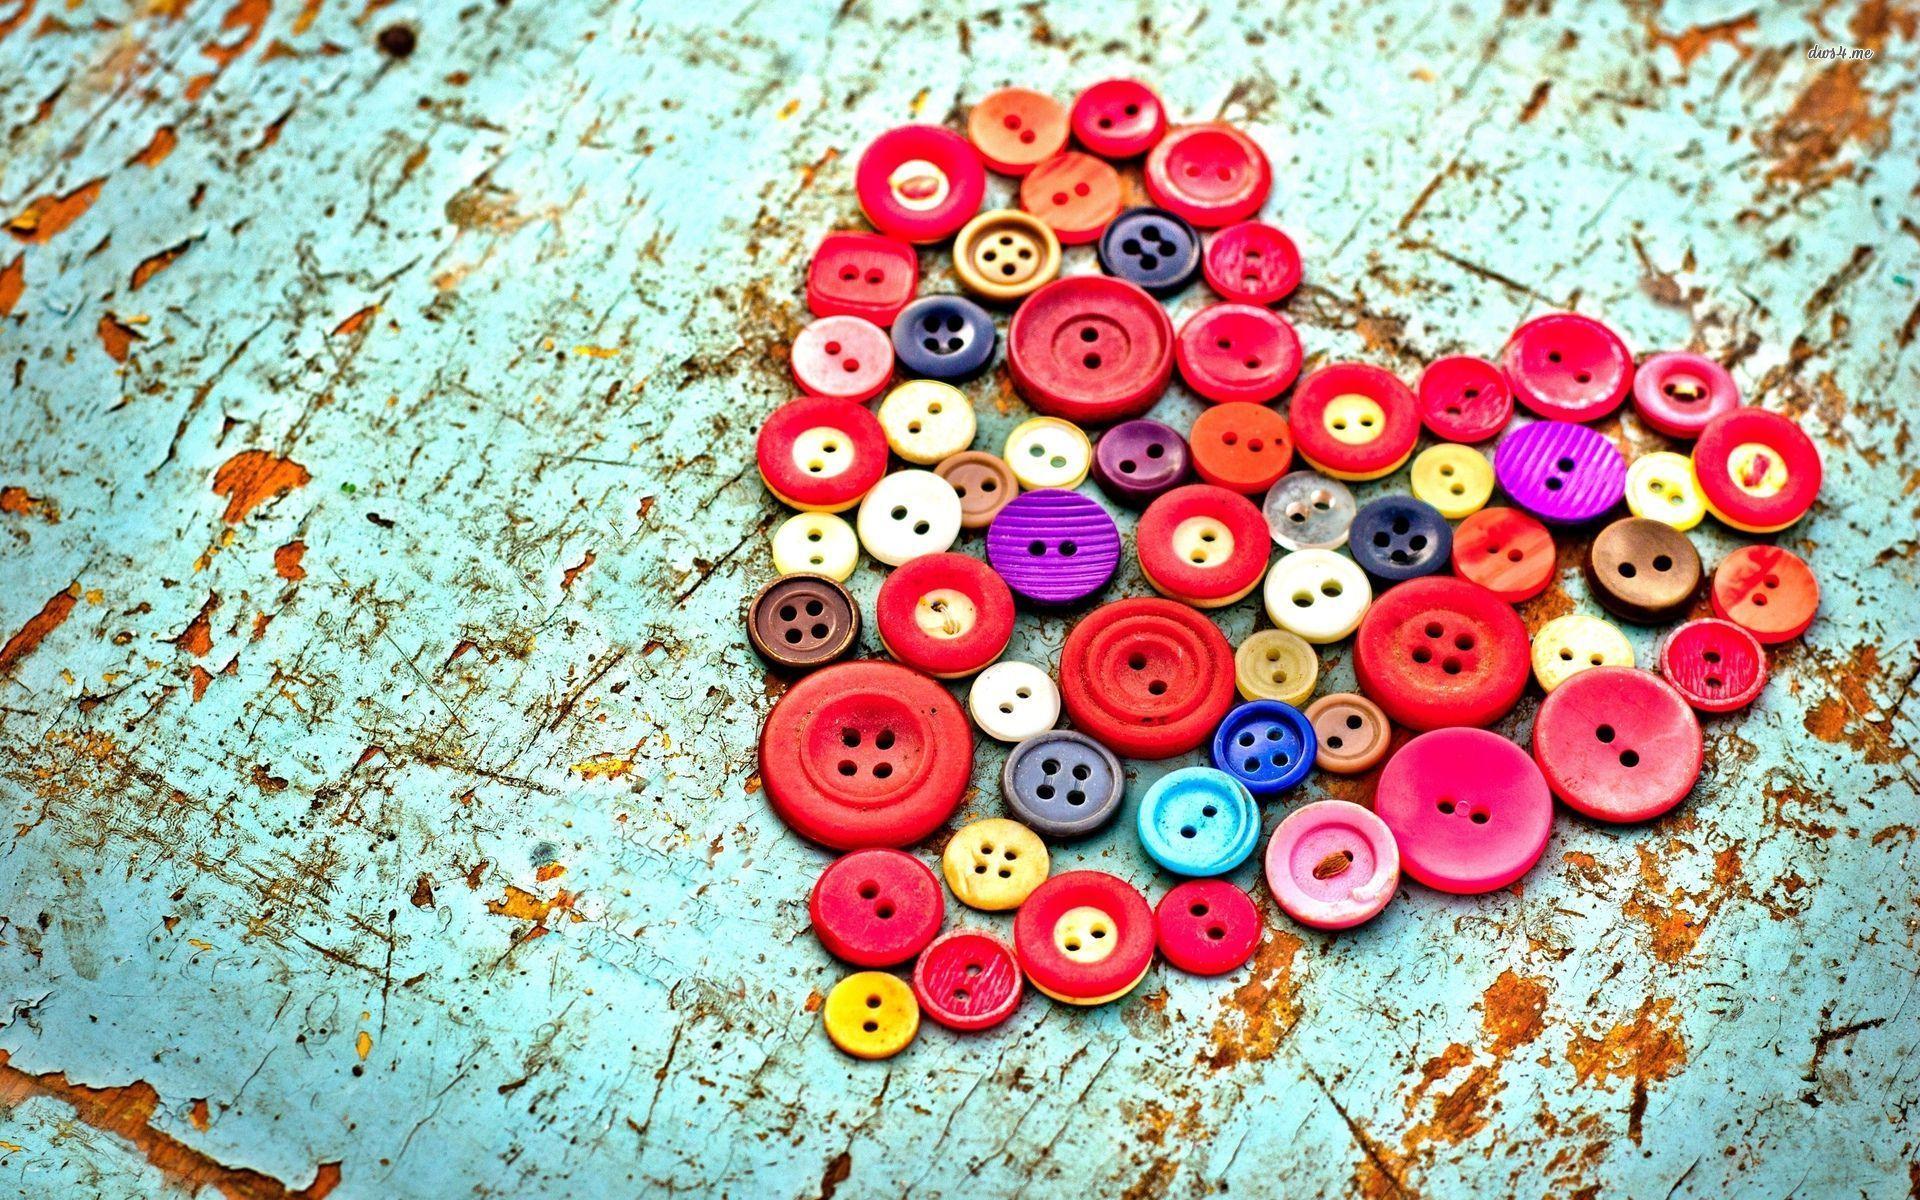 Button Wallpaper, Best Button Wallpaper, Wide High Quality